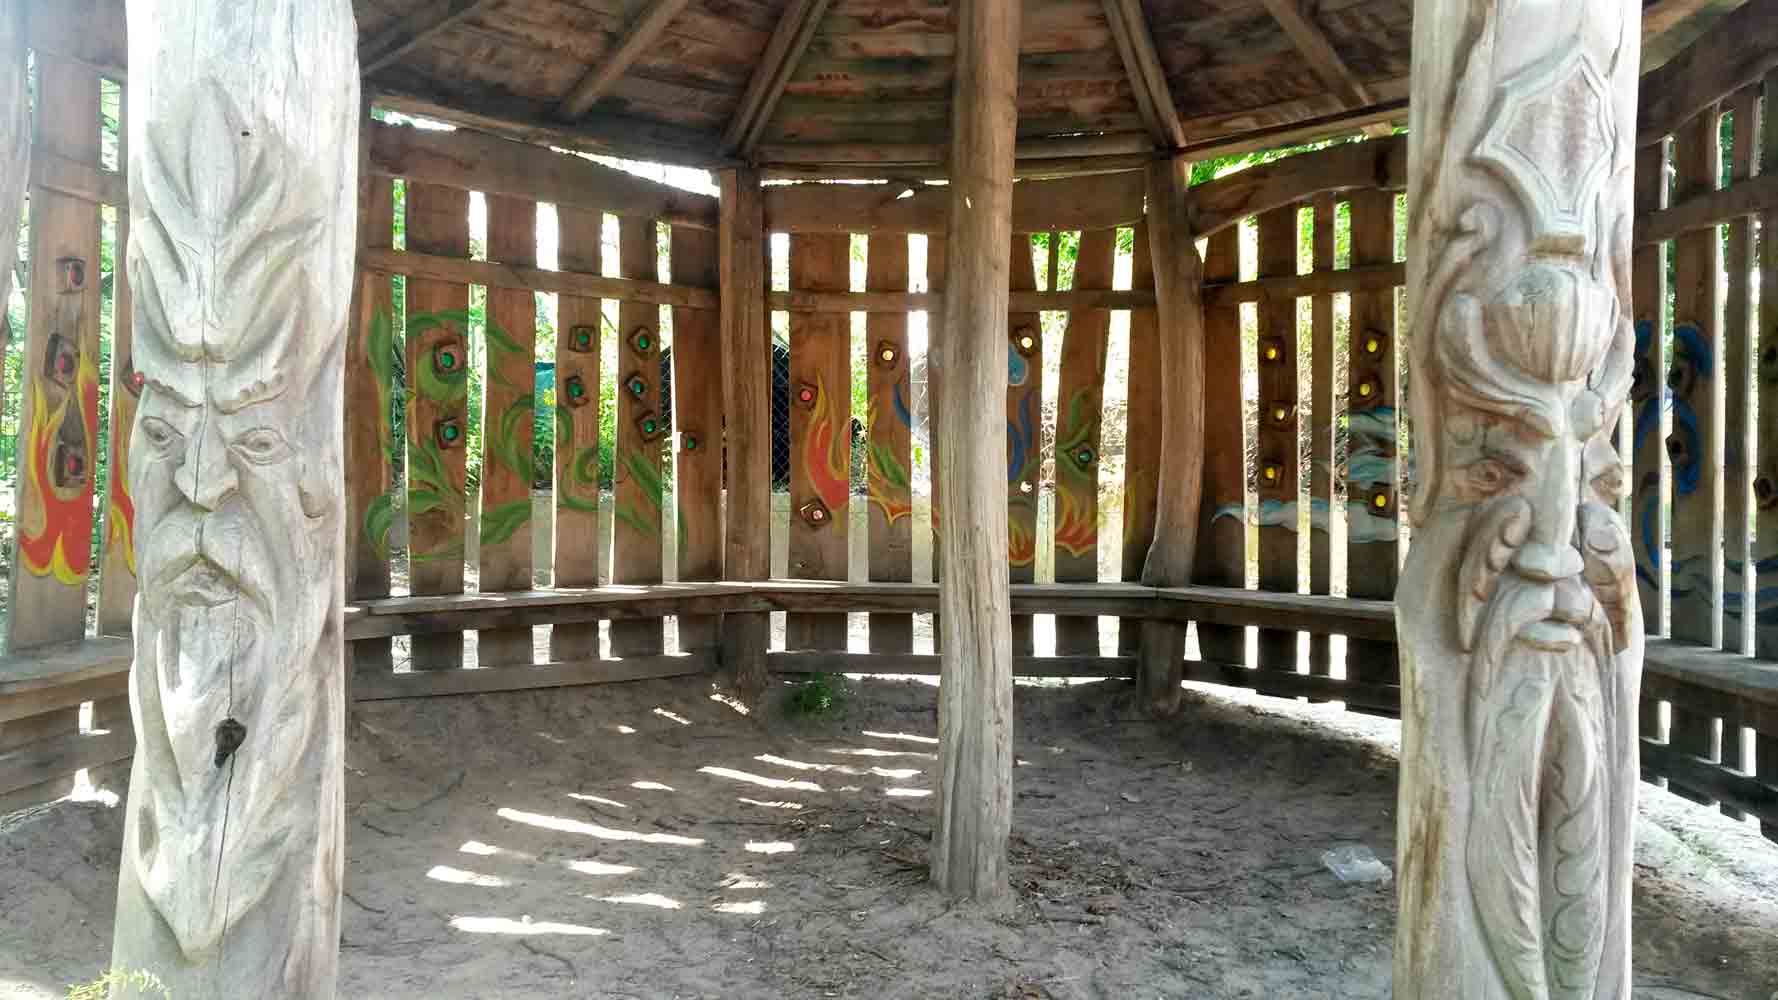 Holzpavillon mit Schnitzarbeiten und Bemalungen